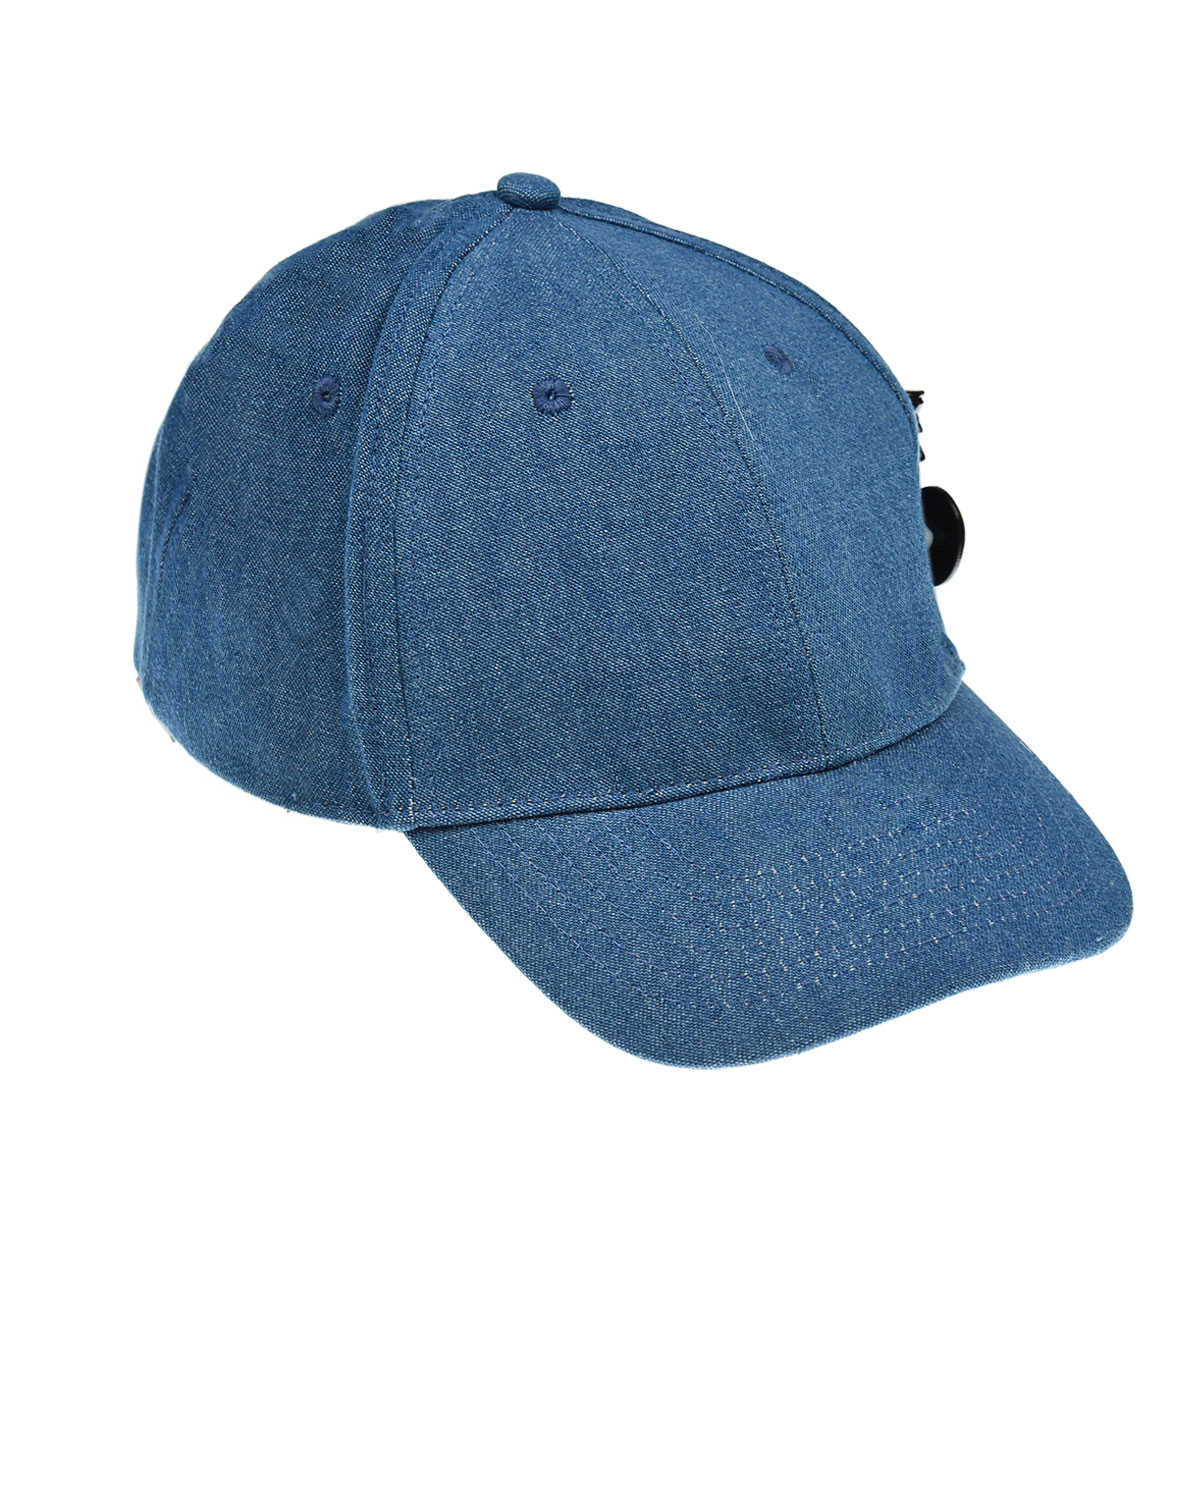 Синяя джинсовая кепка с аппликациями Regina детская, размер 56, цвет синий